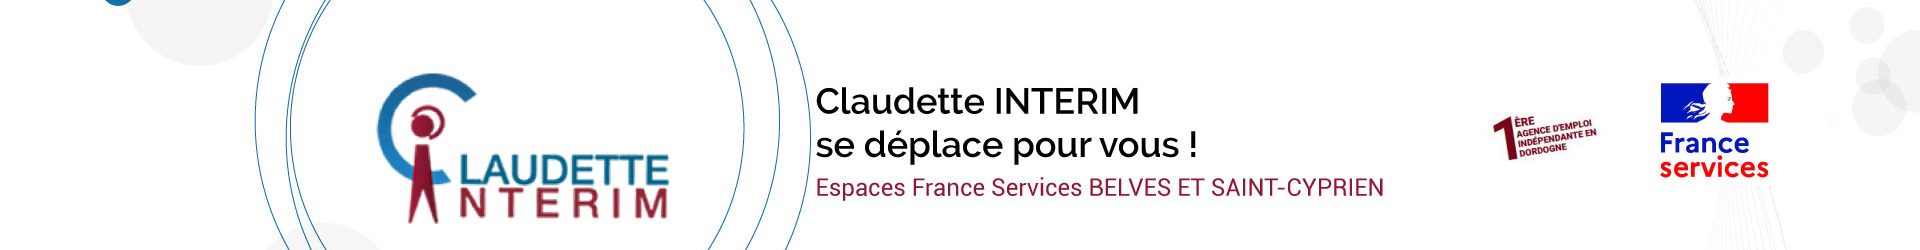 Espaces France Services : Permanences Claudette interim